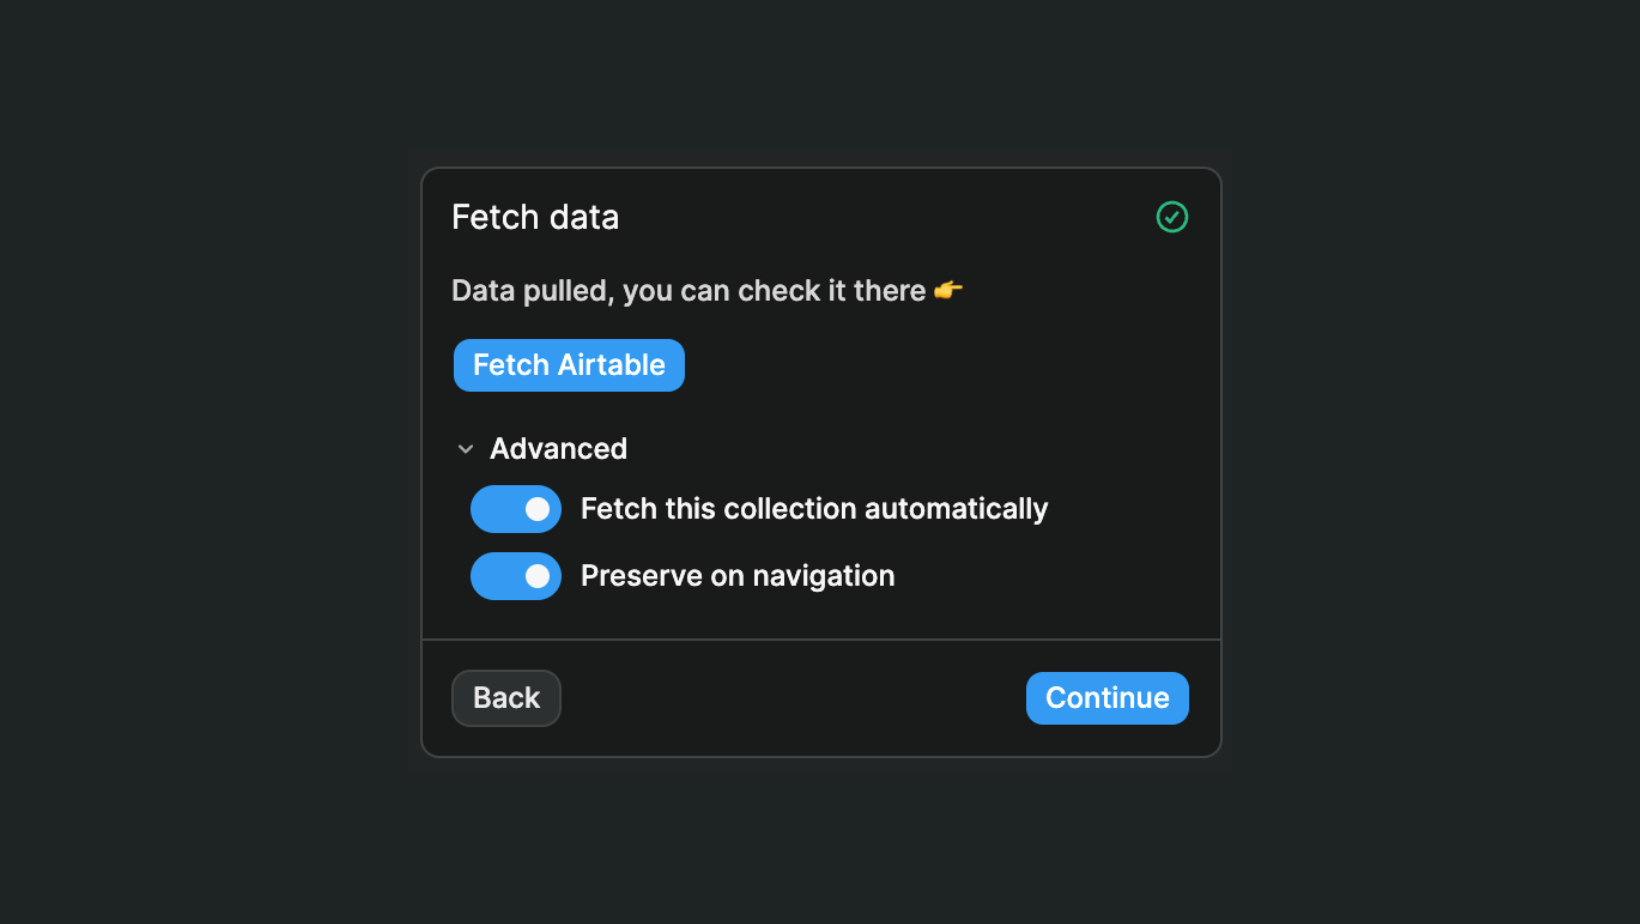 Fetch data step